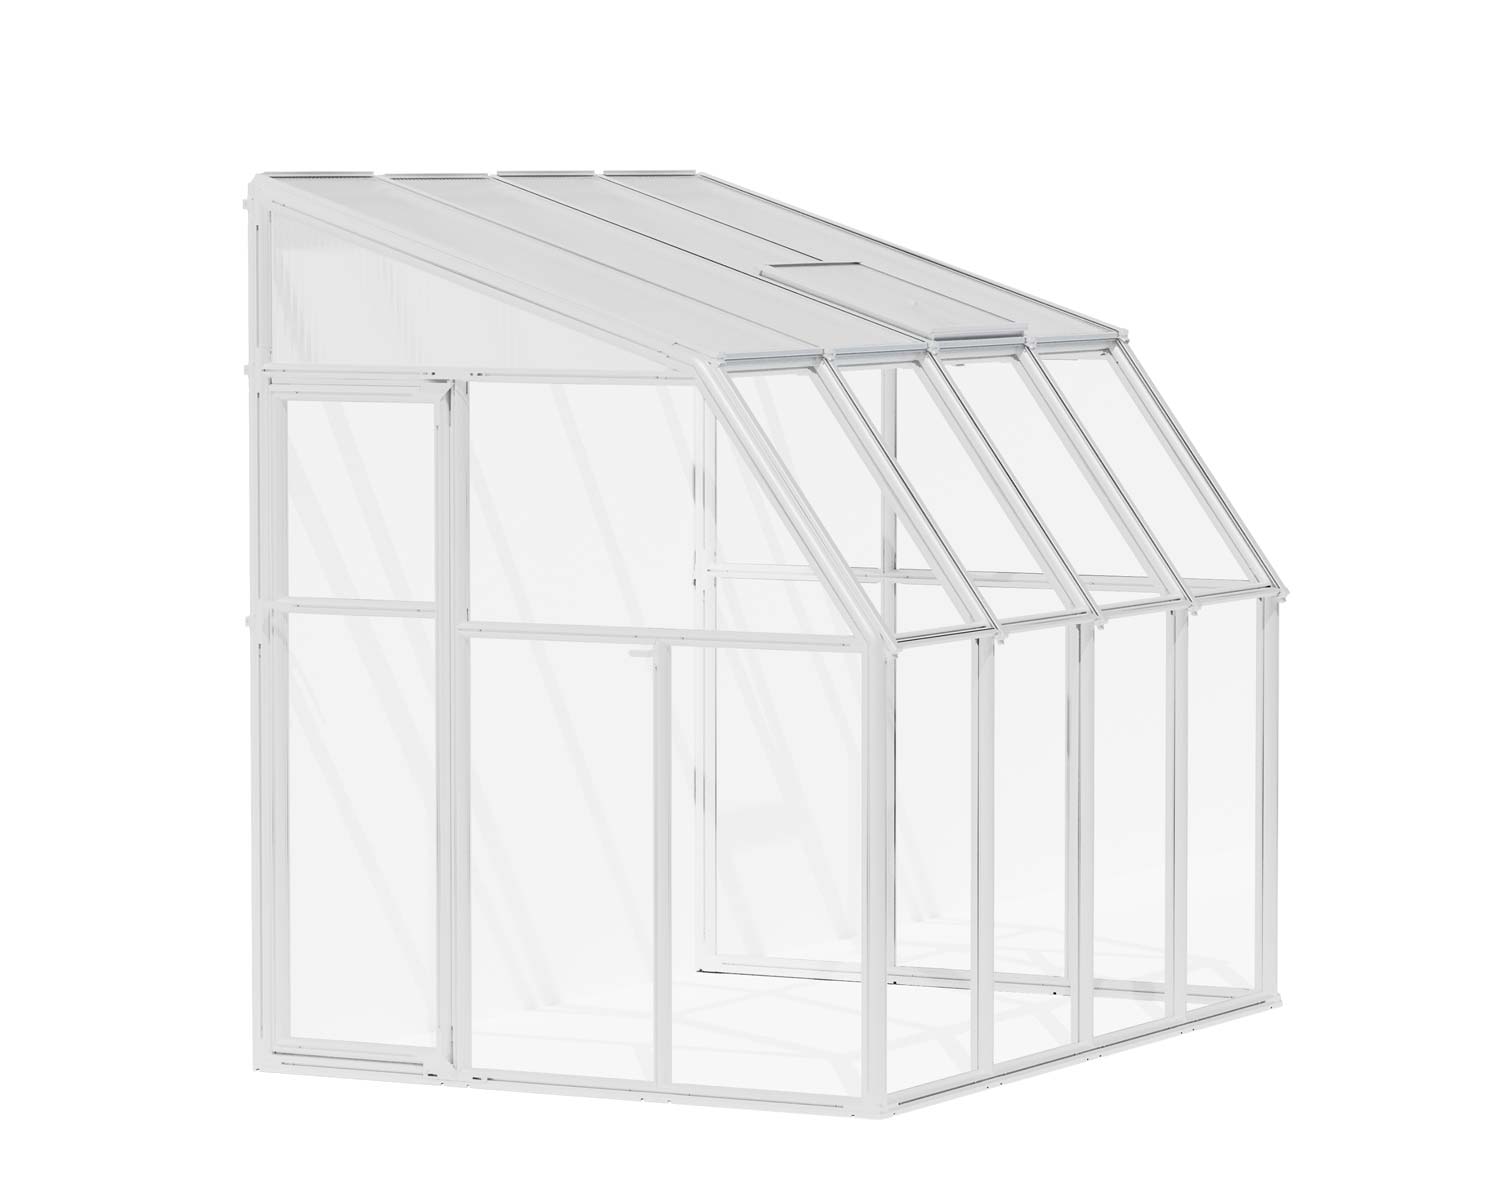 Solarium SunRoom Kit 6 ft. x 8 ft. White Structure & Hybrid Glazing